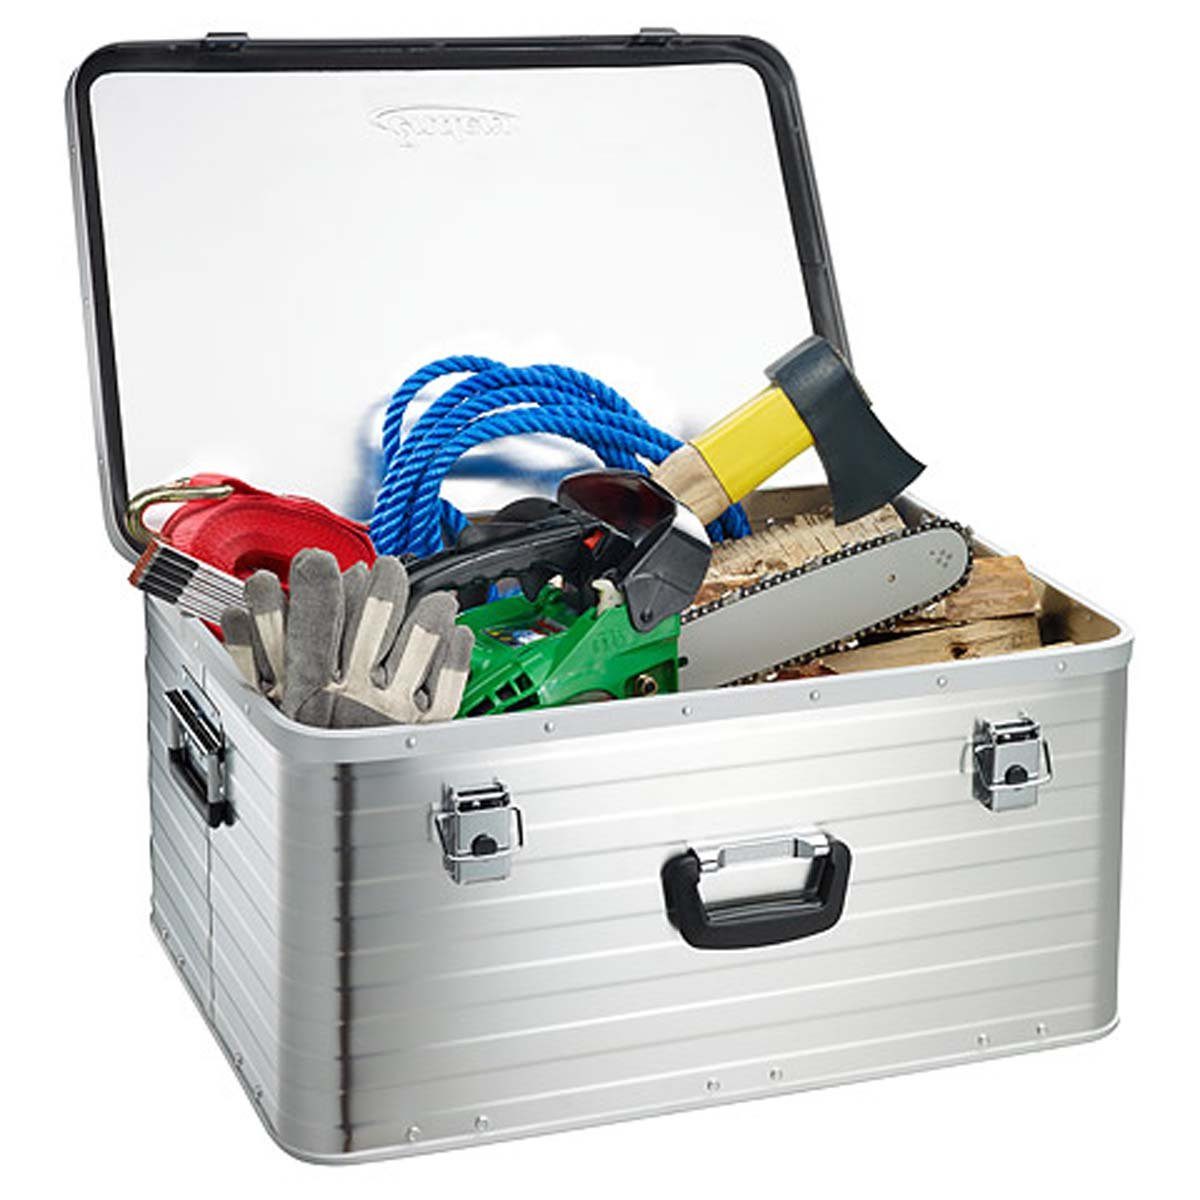 Aufbewahrungsbox Enders® L, Metallkiste Moosgummidichtung, hochwertig Alukoffer 80 Alubox Transportbox mit Alubox verarbeitet Alukiste Lagerbox